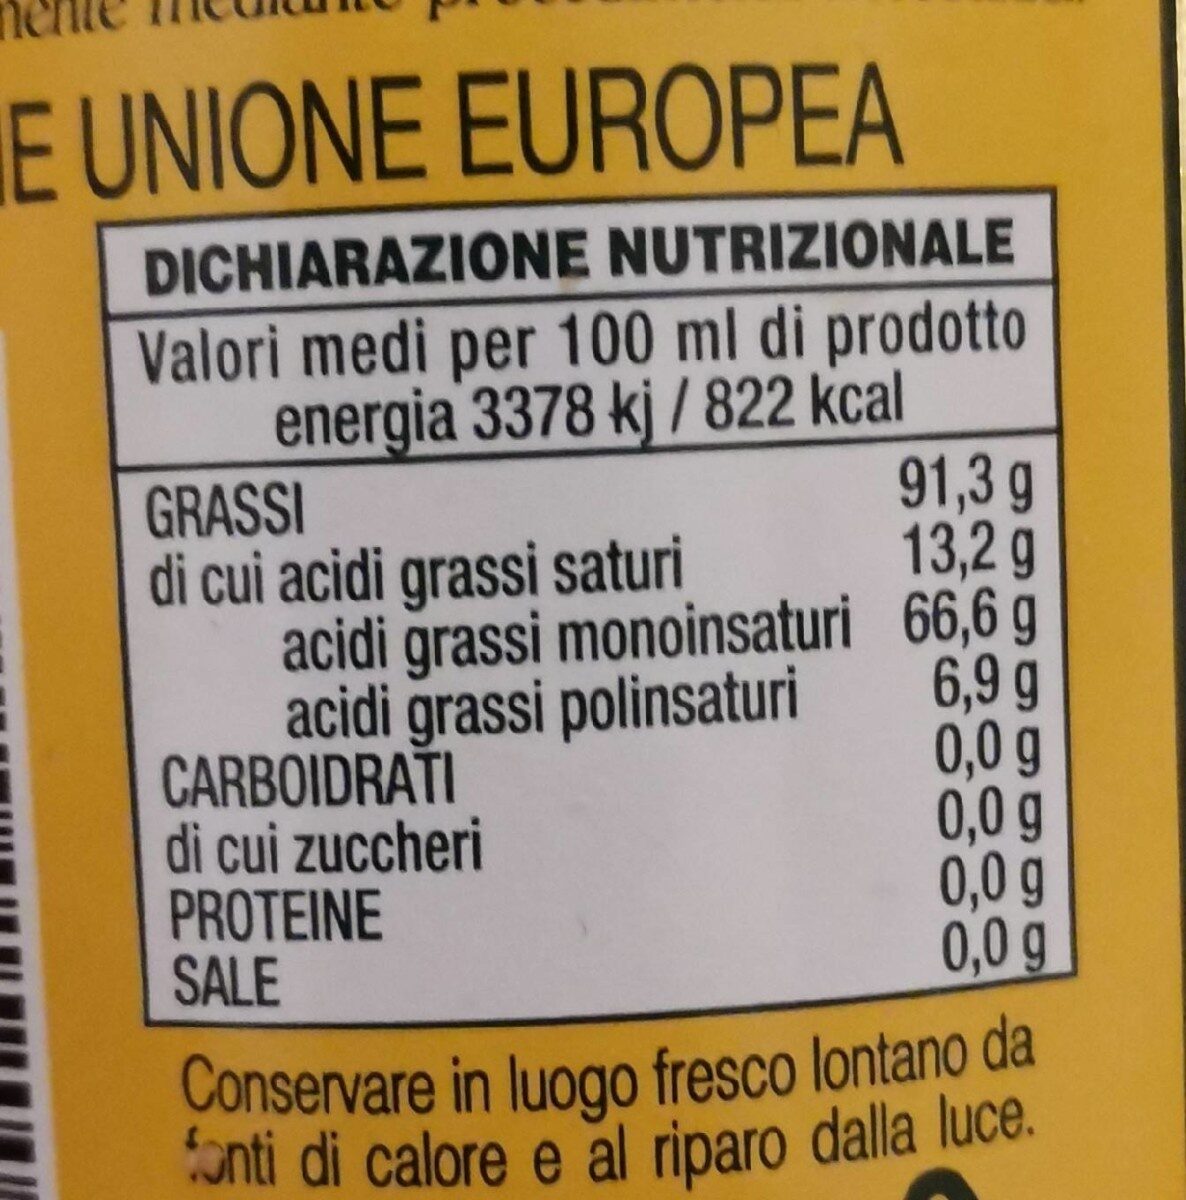 Olio extra vergine di oliva san giovanni litro - Tableau nutritionnel - de